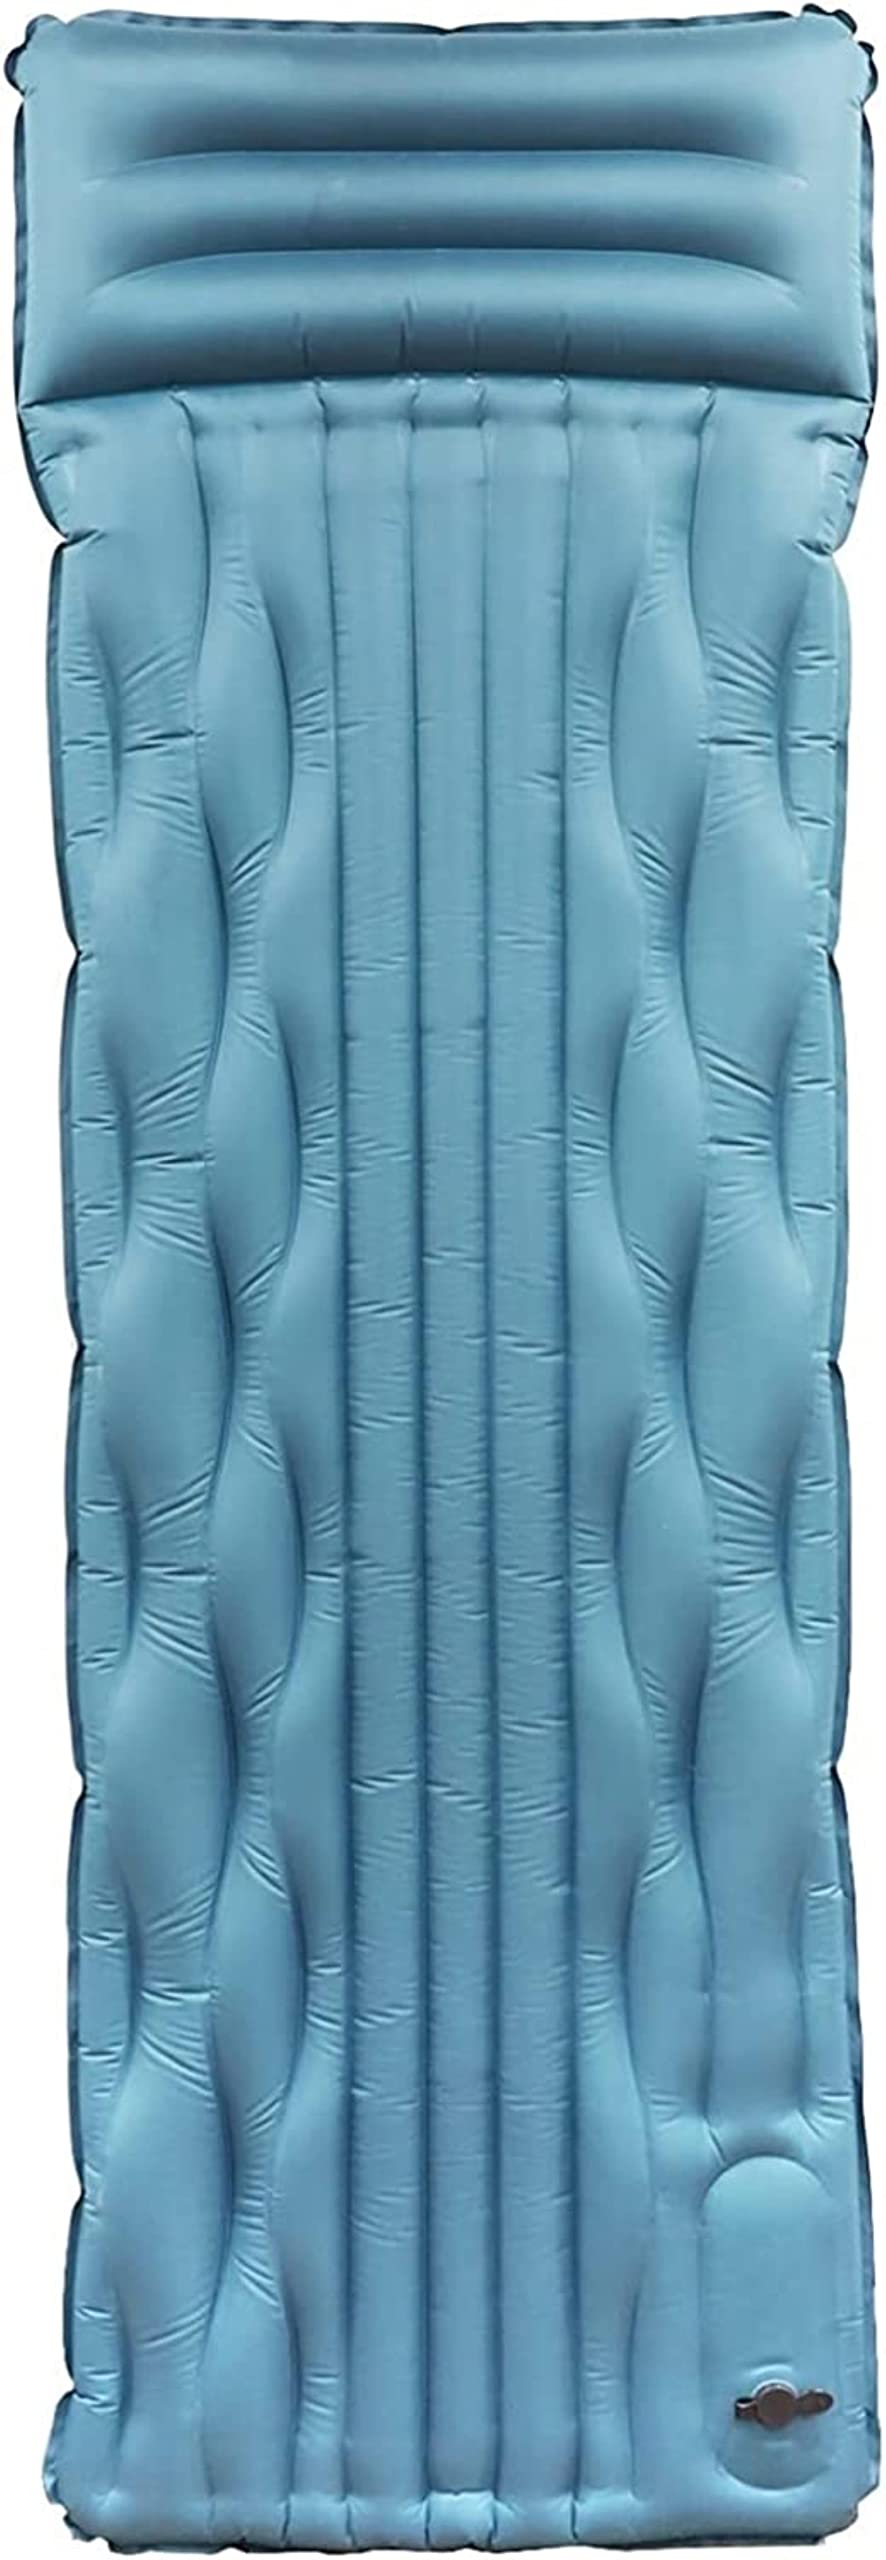 送料無料便利100 Sleeping Pad for Camping with Built-in Foot Pump Inflatable Camping Pad Durable Waterproof Portable C